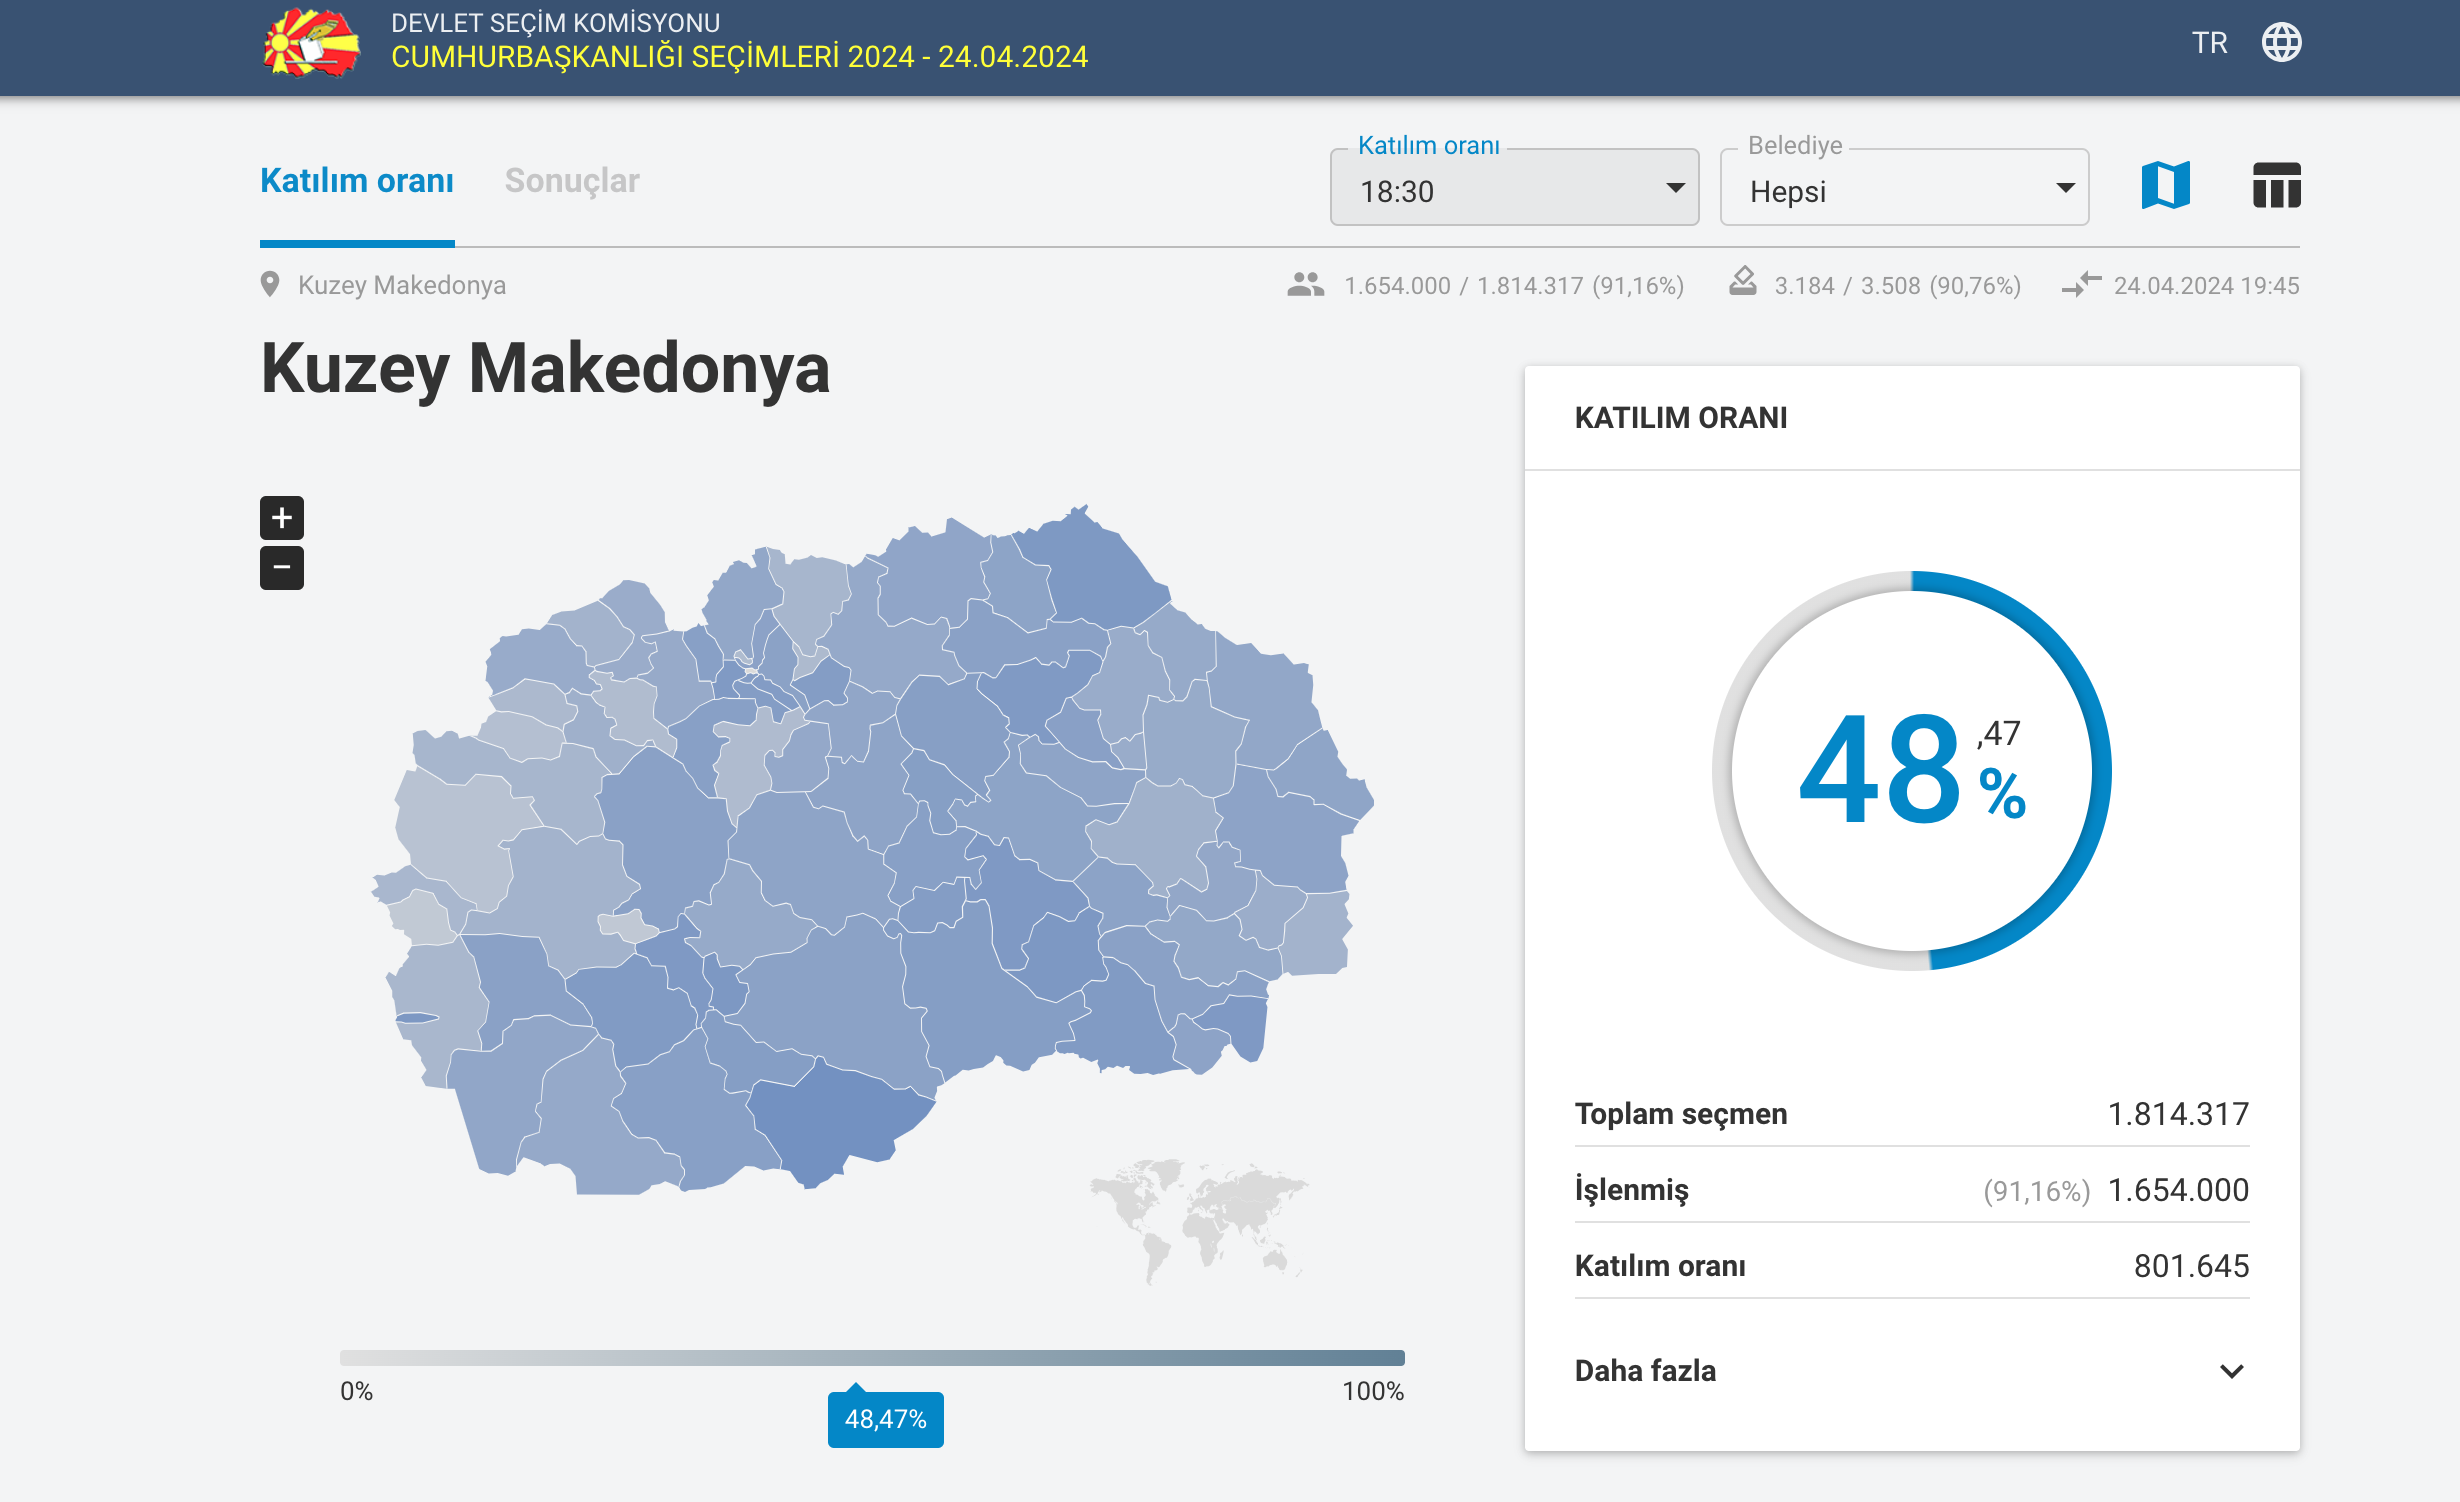 K. Makedonya’da cumhurbaşkanlığı seçimlerine katılım % 48.47 oldu